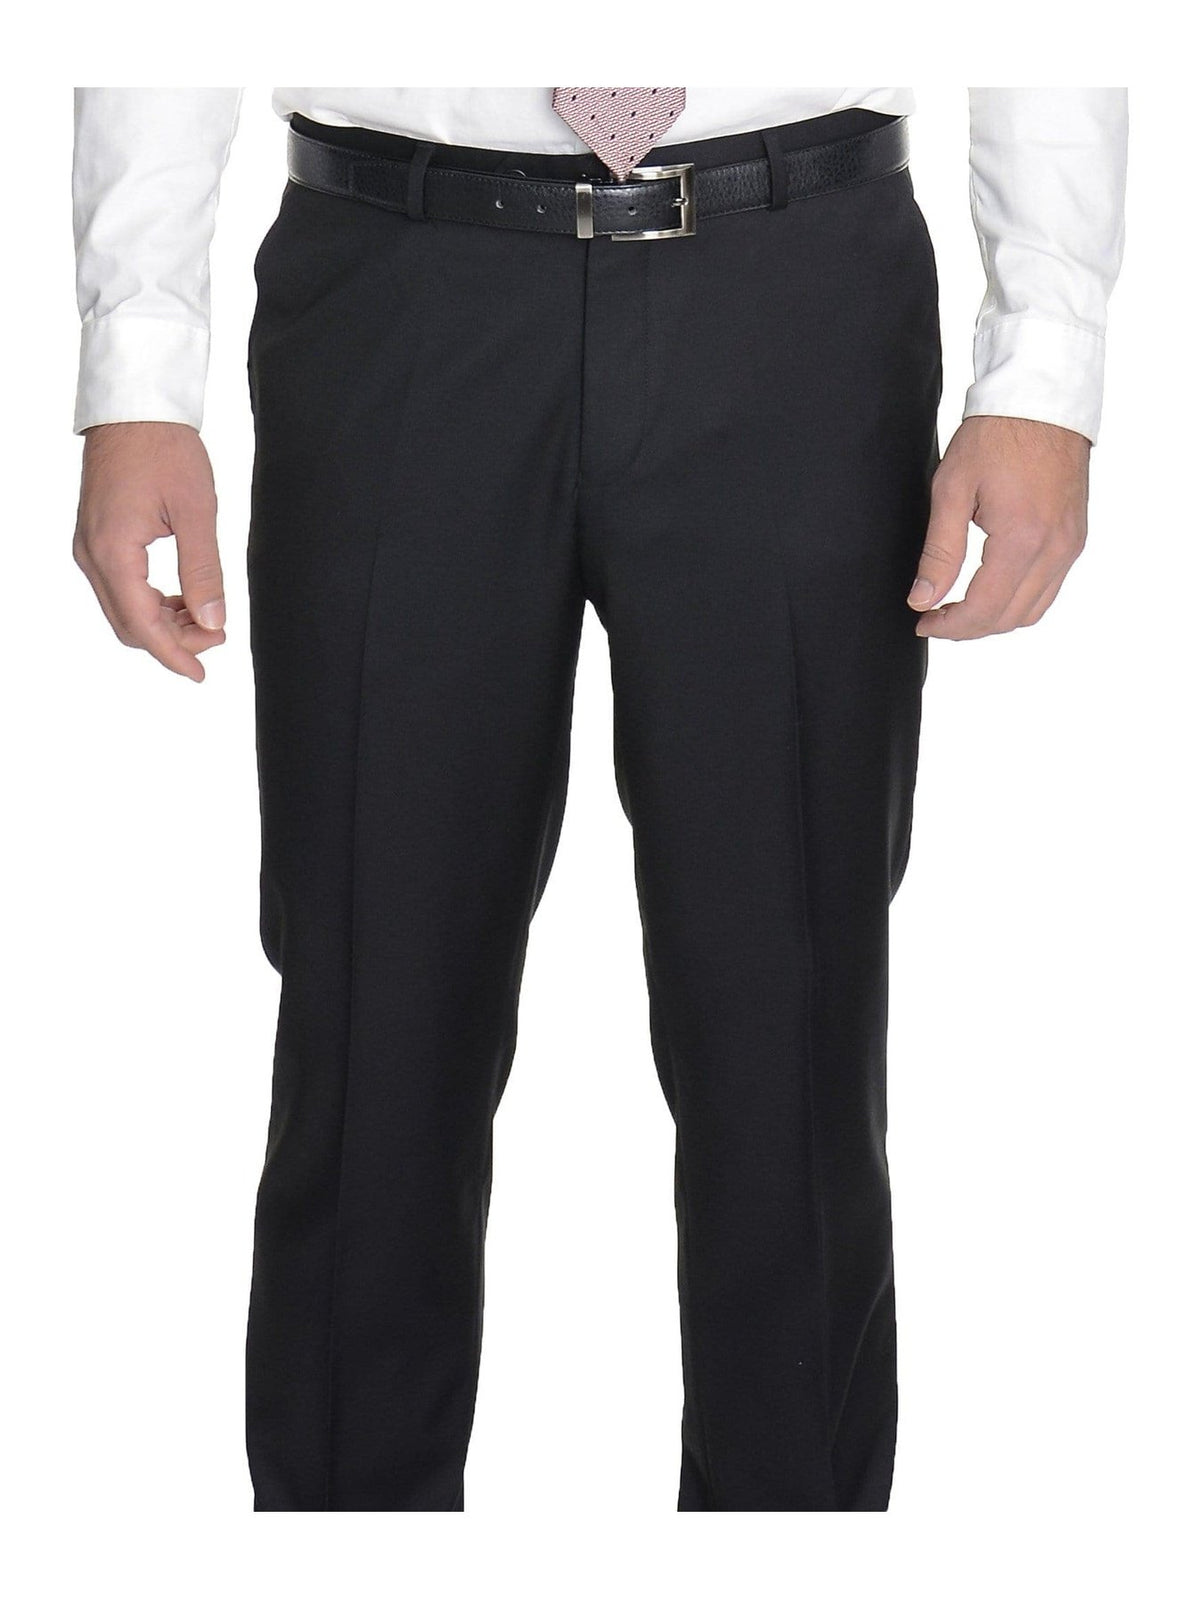 Raphael TWO PIECE SUITS Men&#39;s Raphael Slim Fit Solid Black Two Button Wool 2 Piece Formal Business Suit